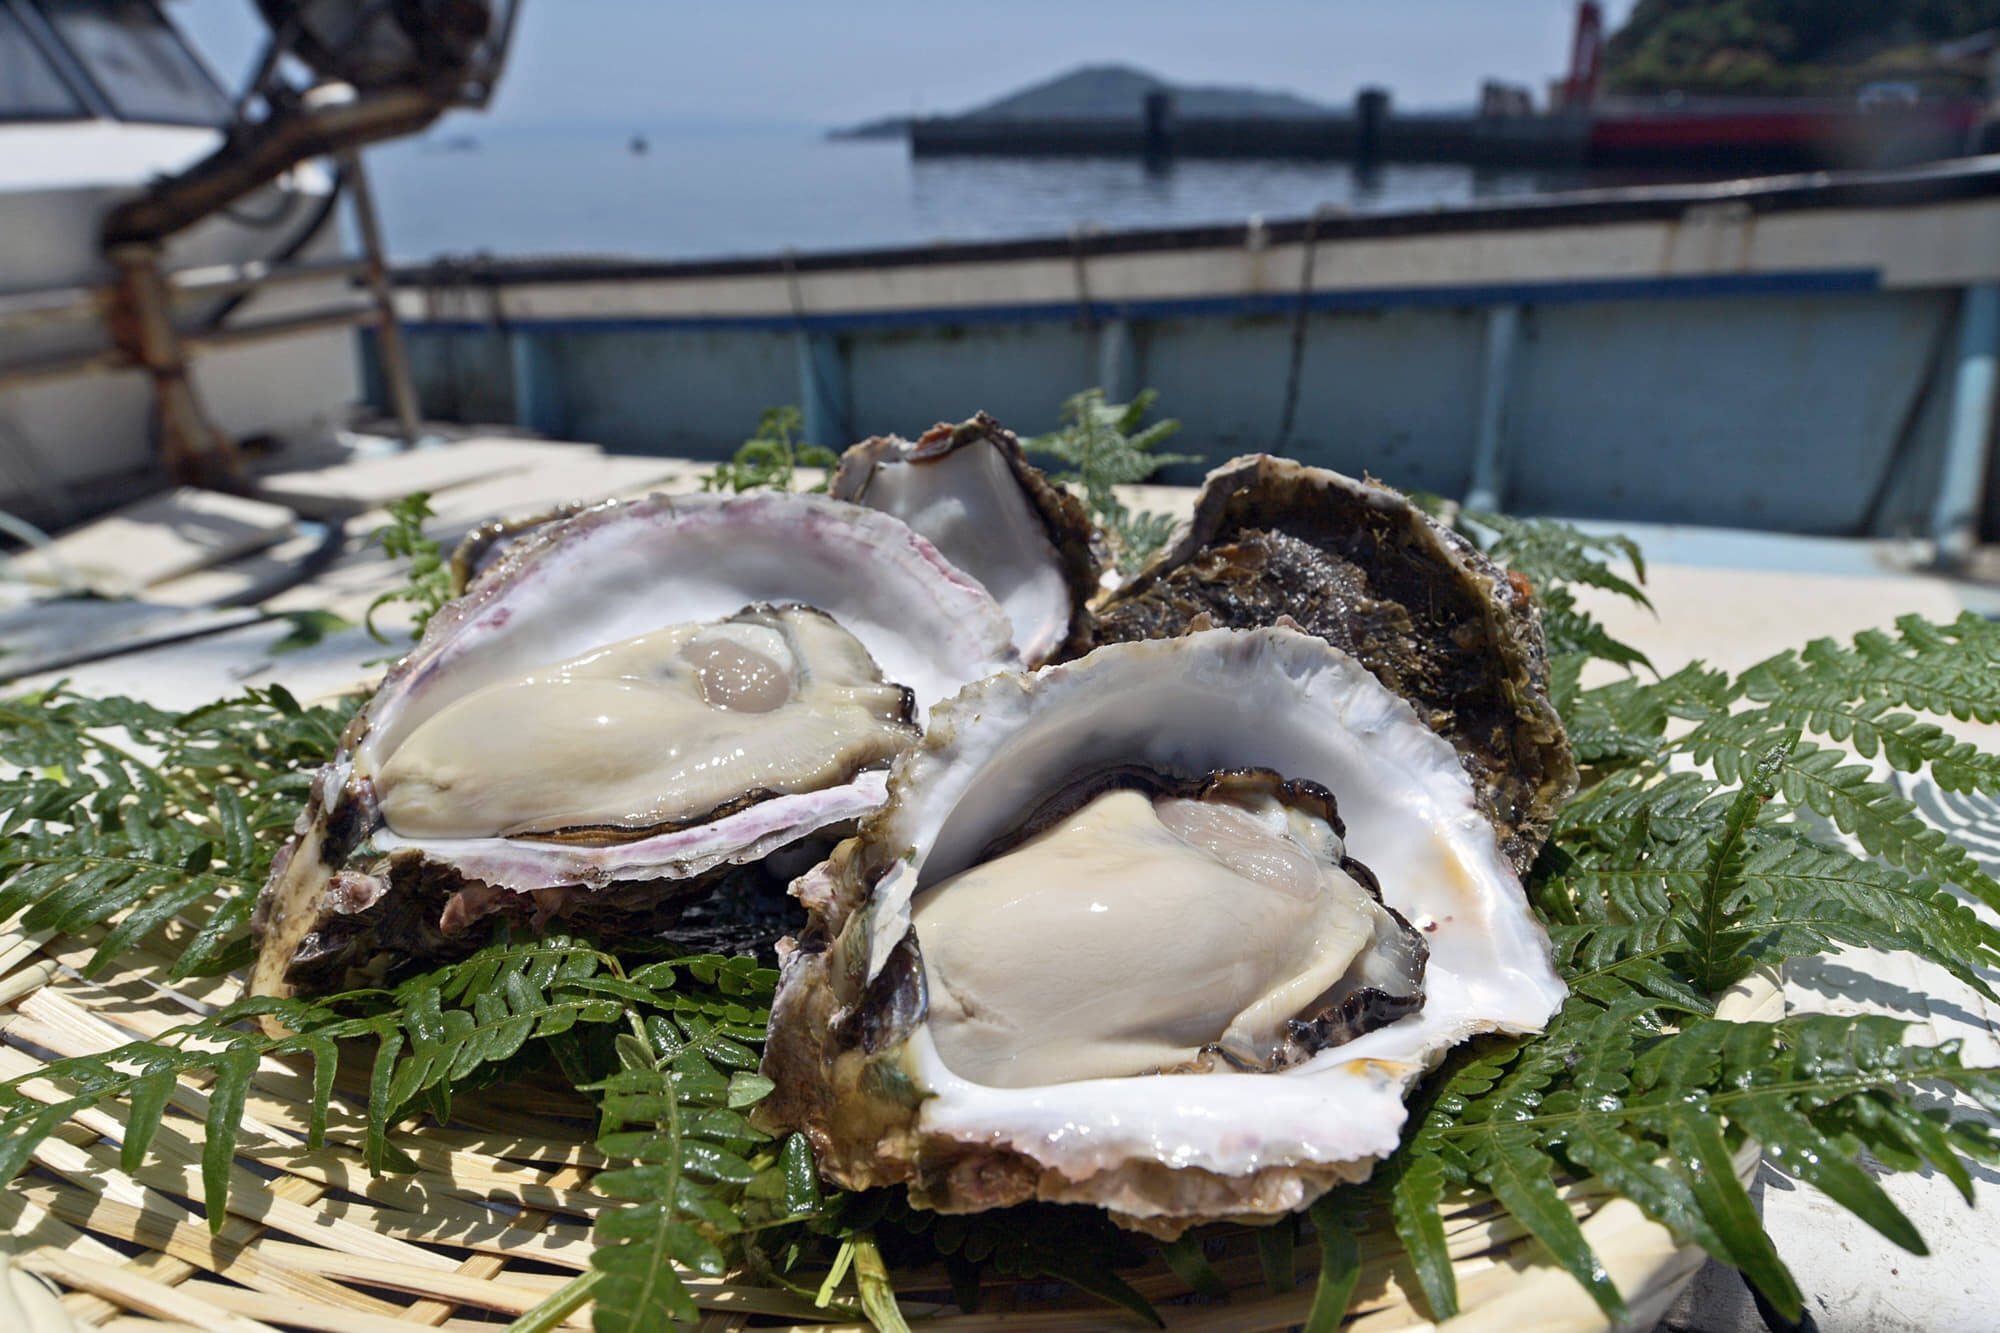 超絶クリーミー 大きい錦盛丸岩牡蠣300 400グラム 7個入り 鹿児島県産 食べチョク 農家 漁師の産直ネット通販 旬の食材を生産者直送